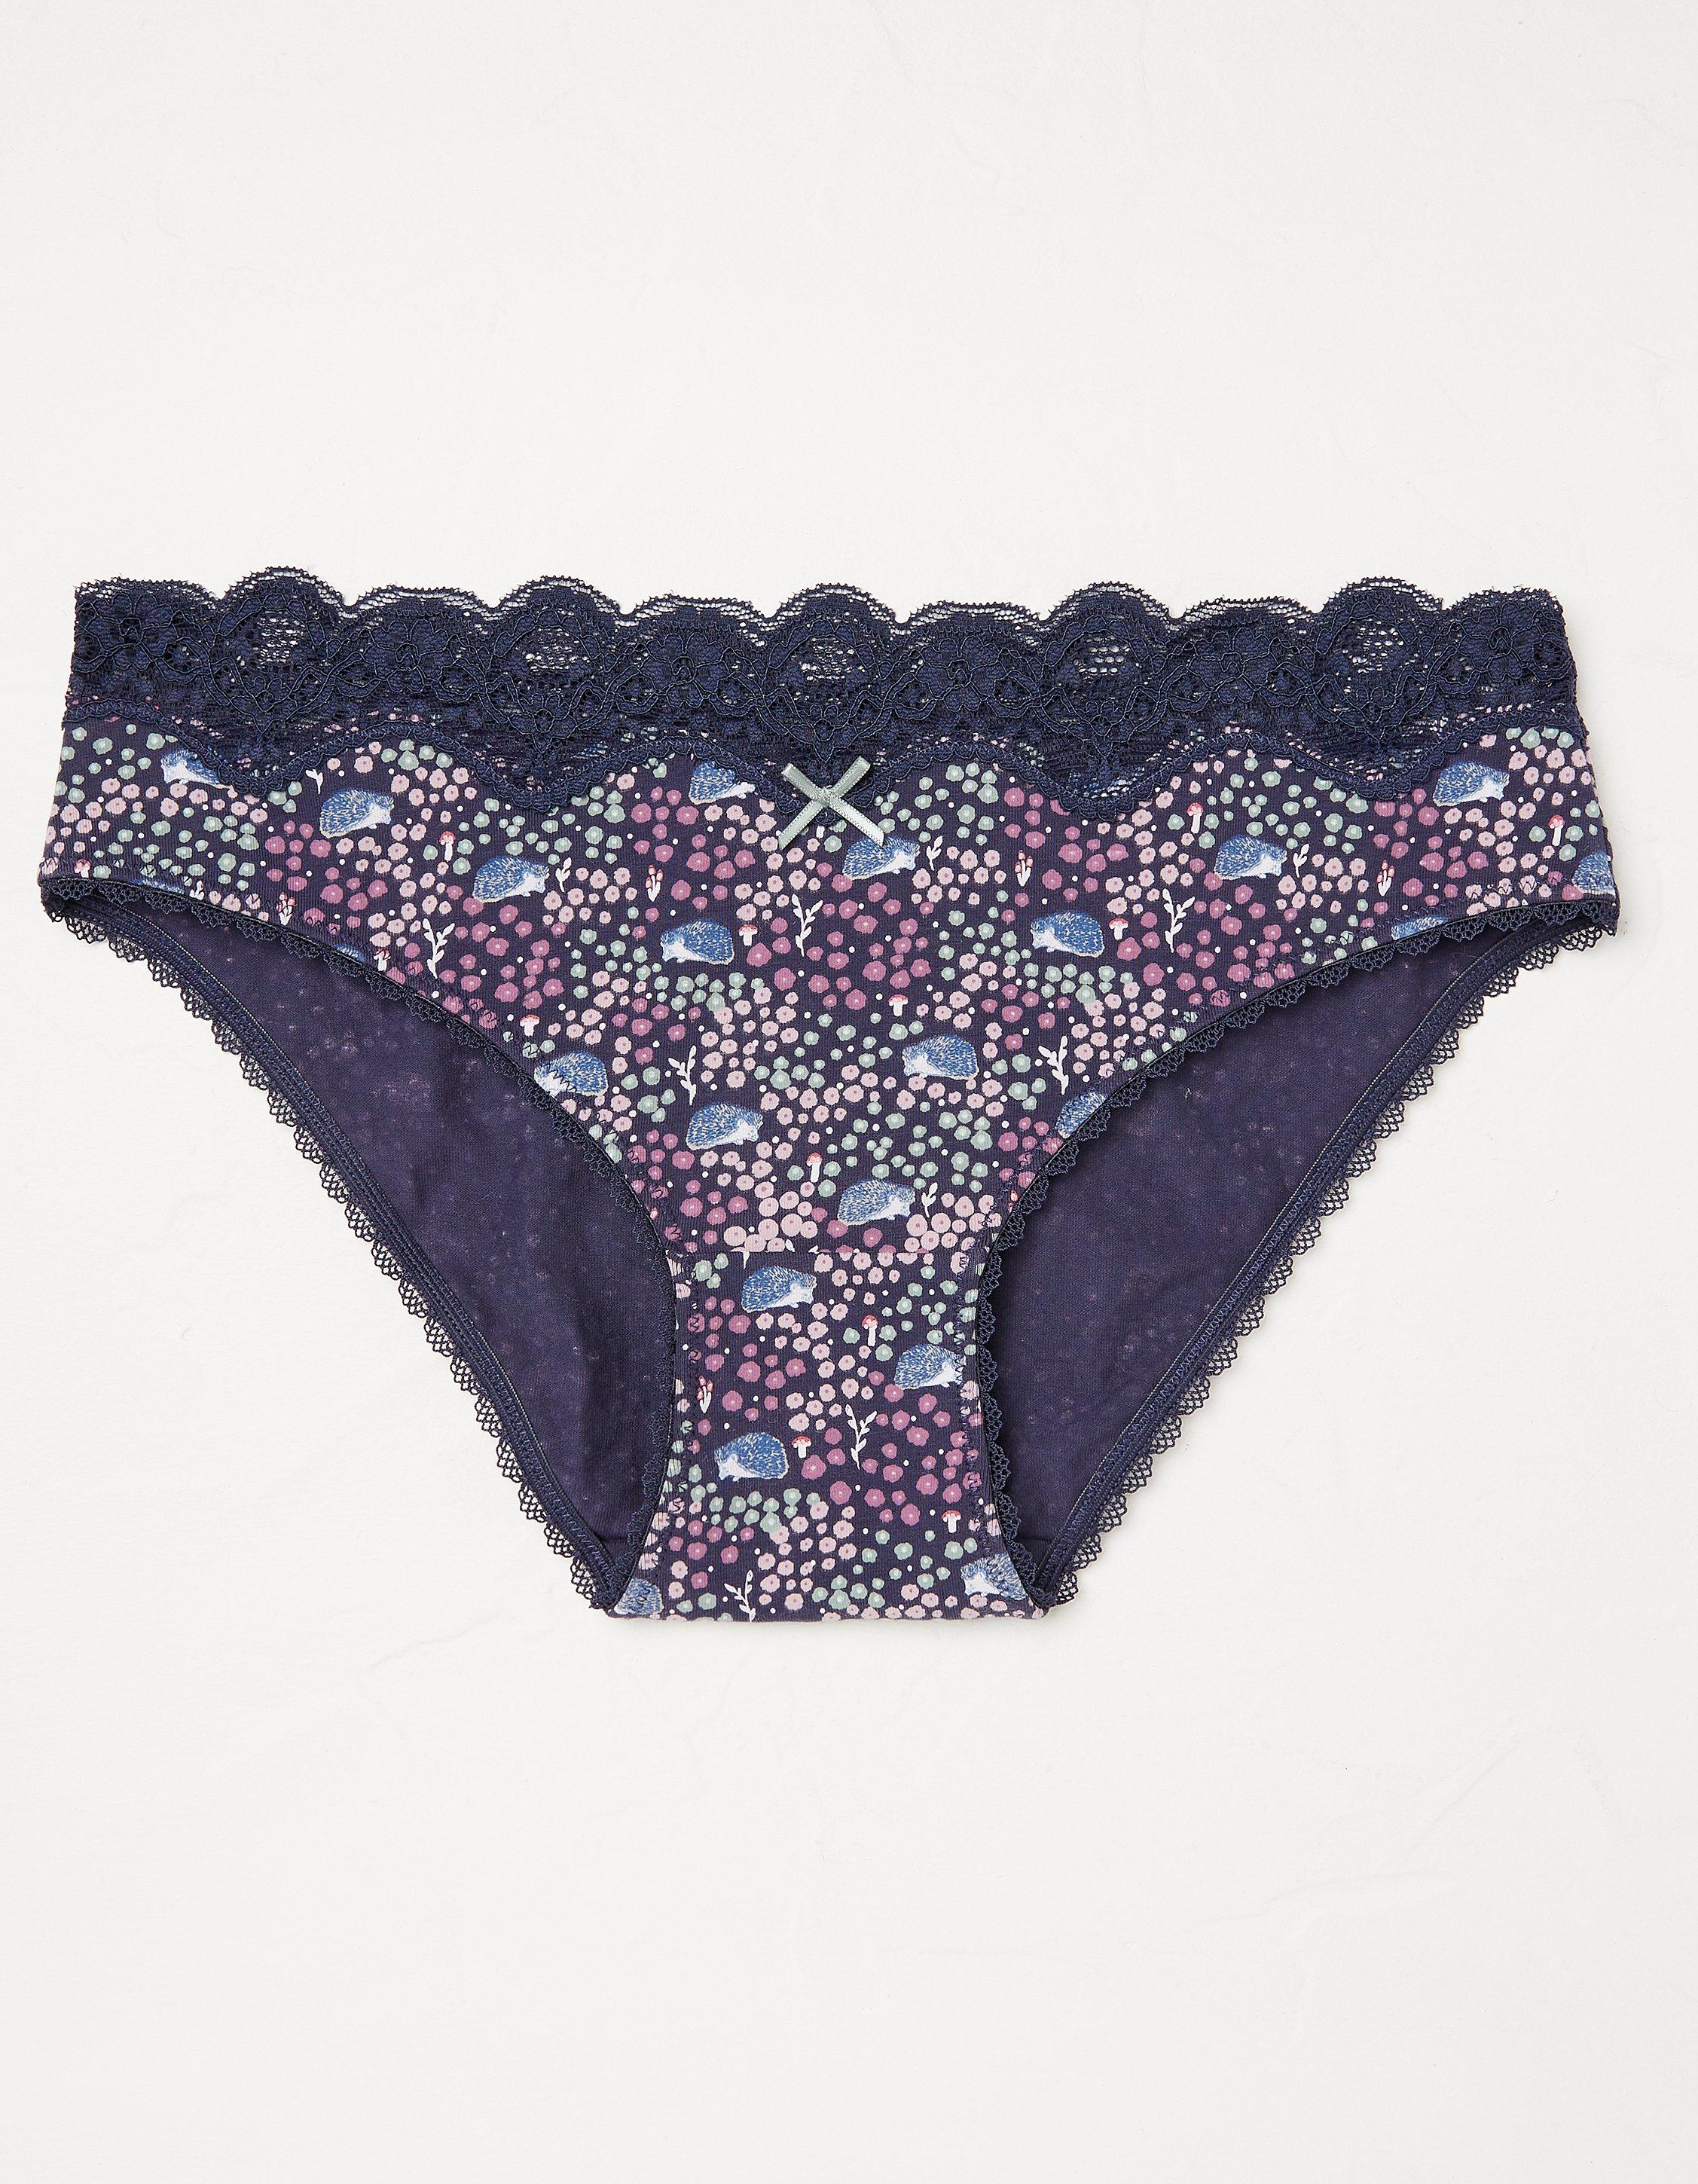 Hedgehog Lace Mini Briefs, Socks, Underwear & Tights